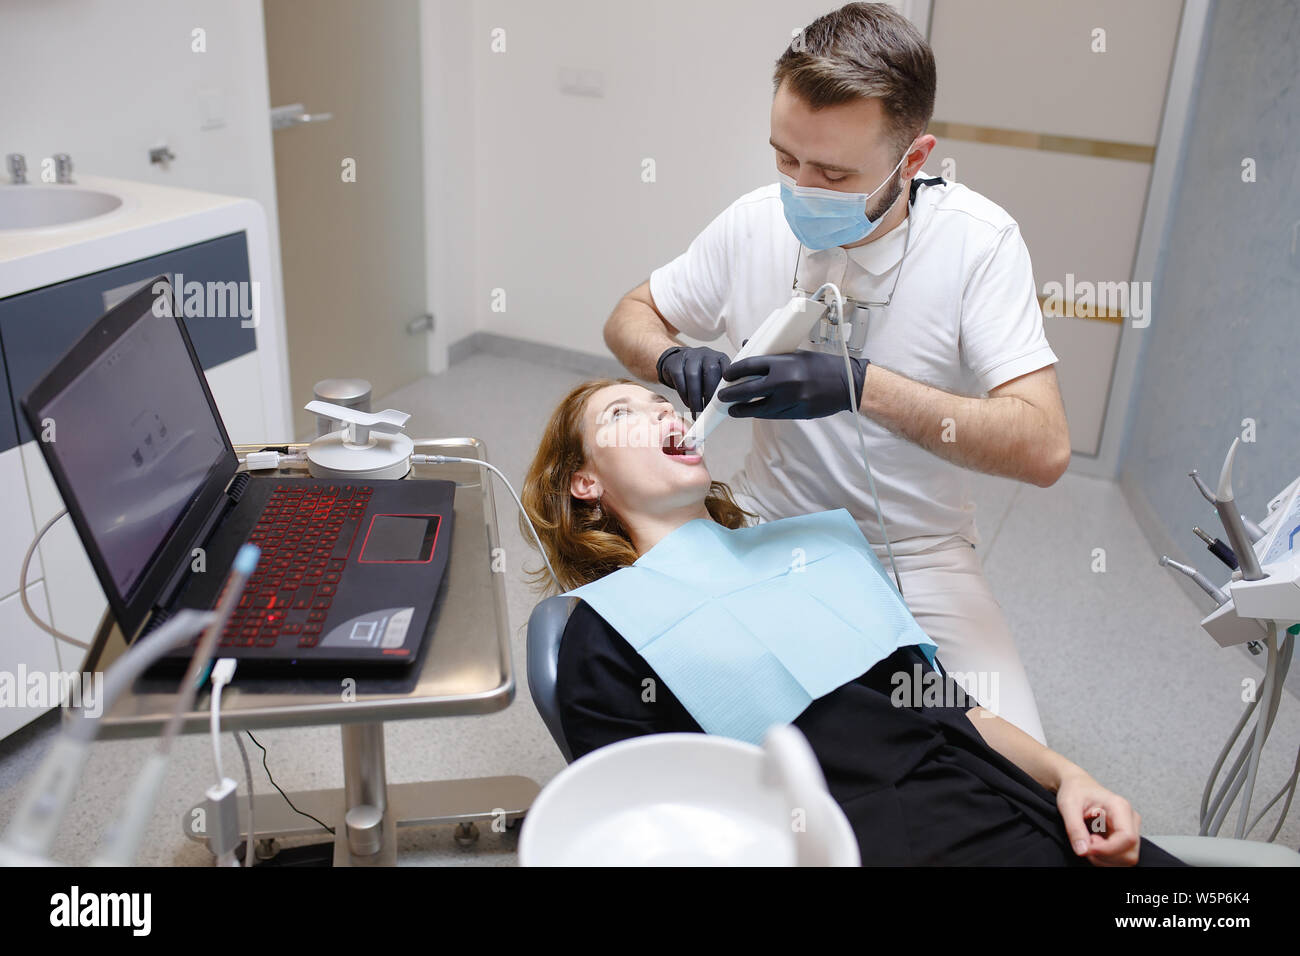 Der Zahnarzt scans Zähne des Patienten mit einem 3D-Scanner Stockfotografie  - Alamy